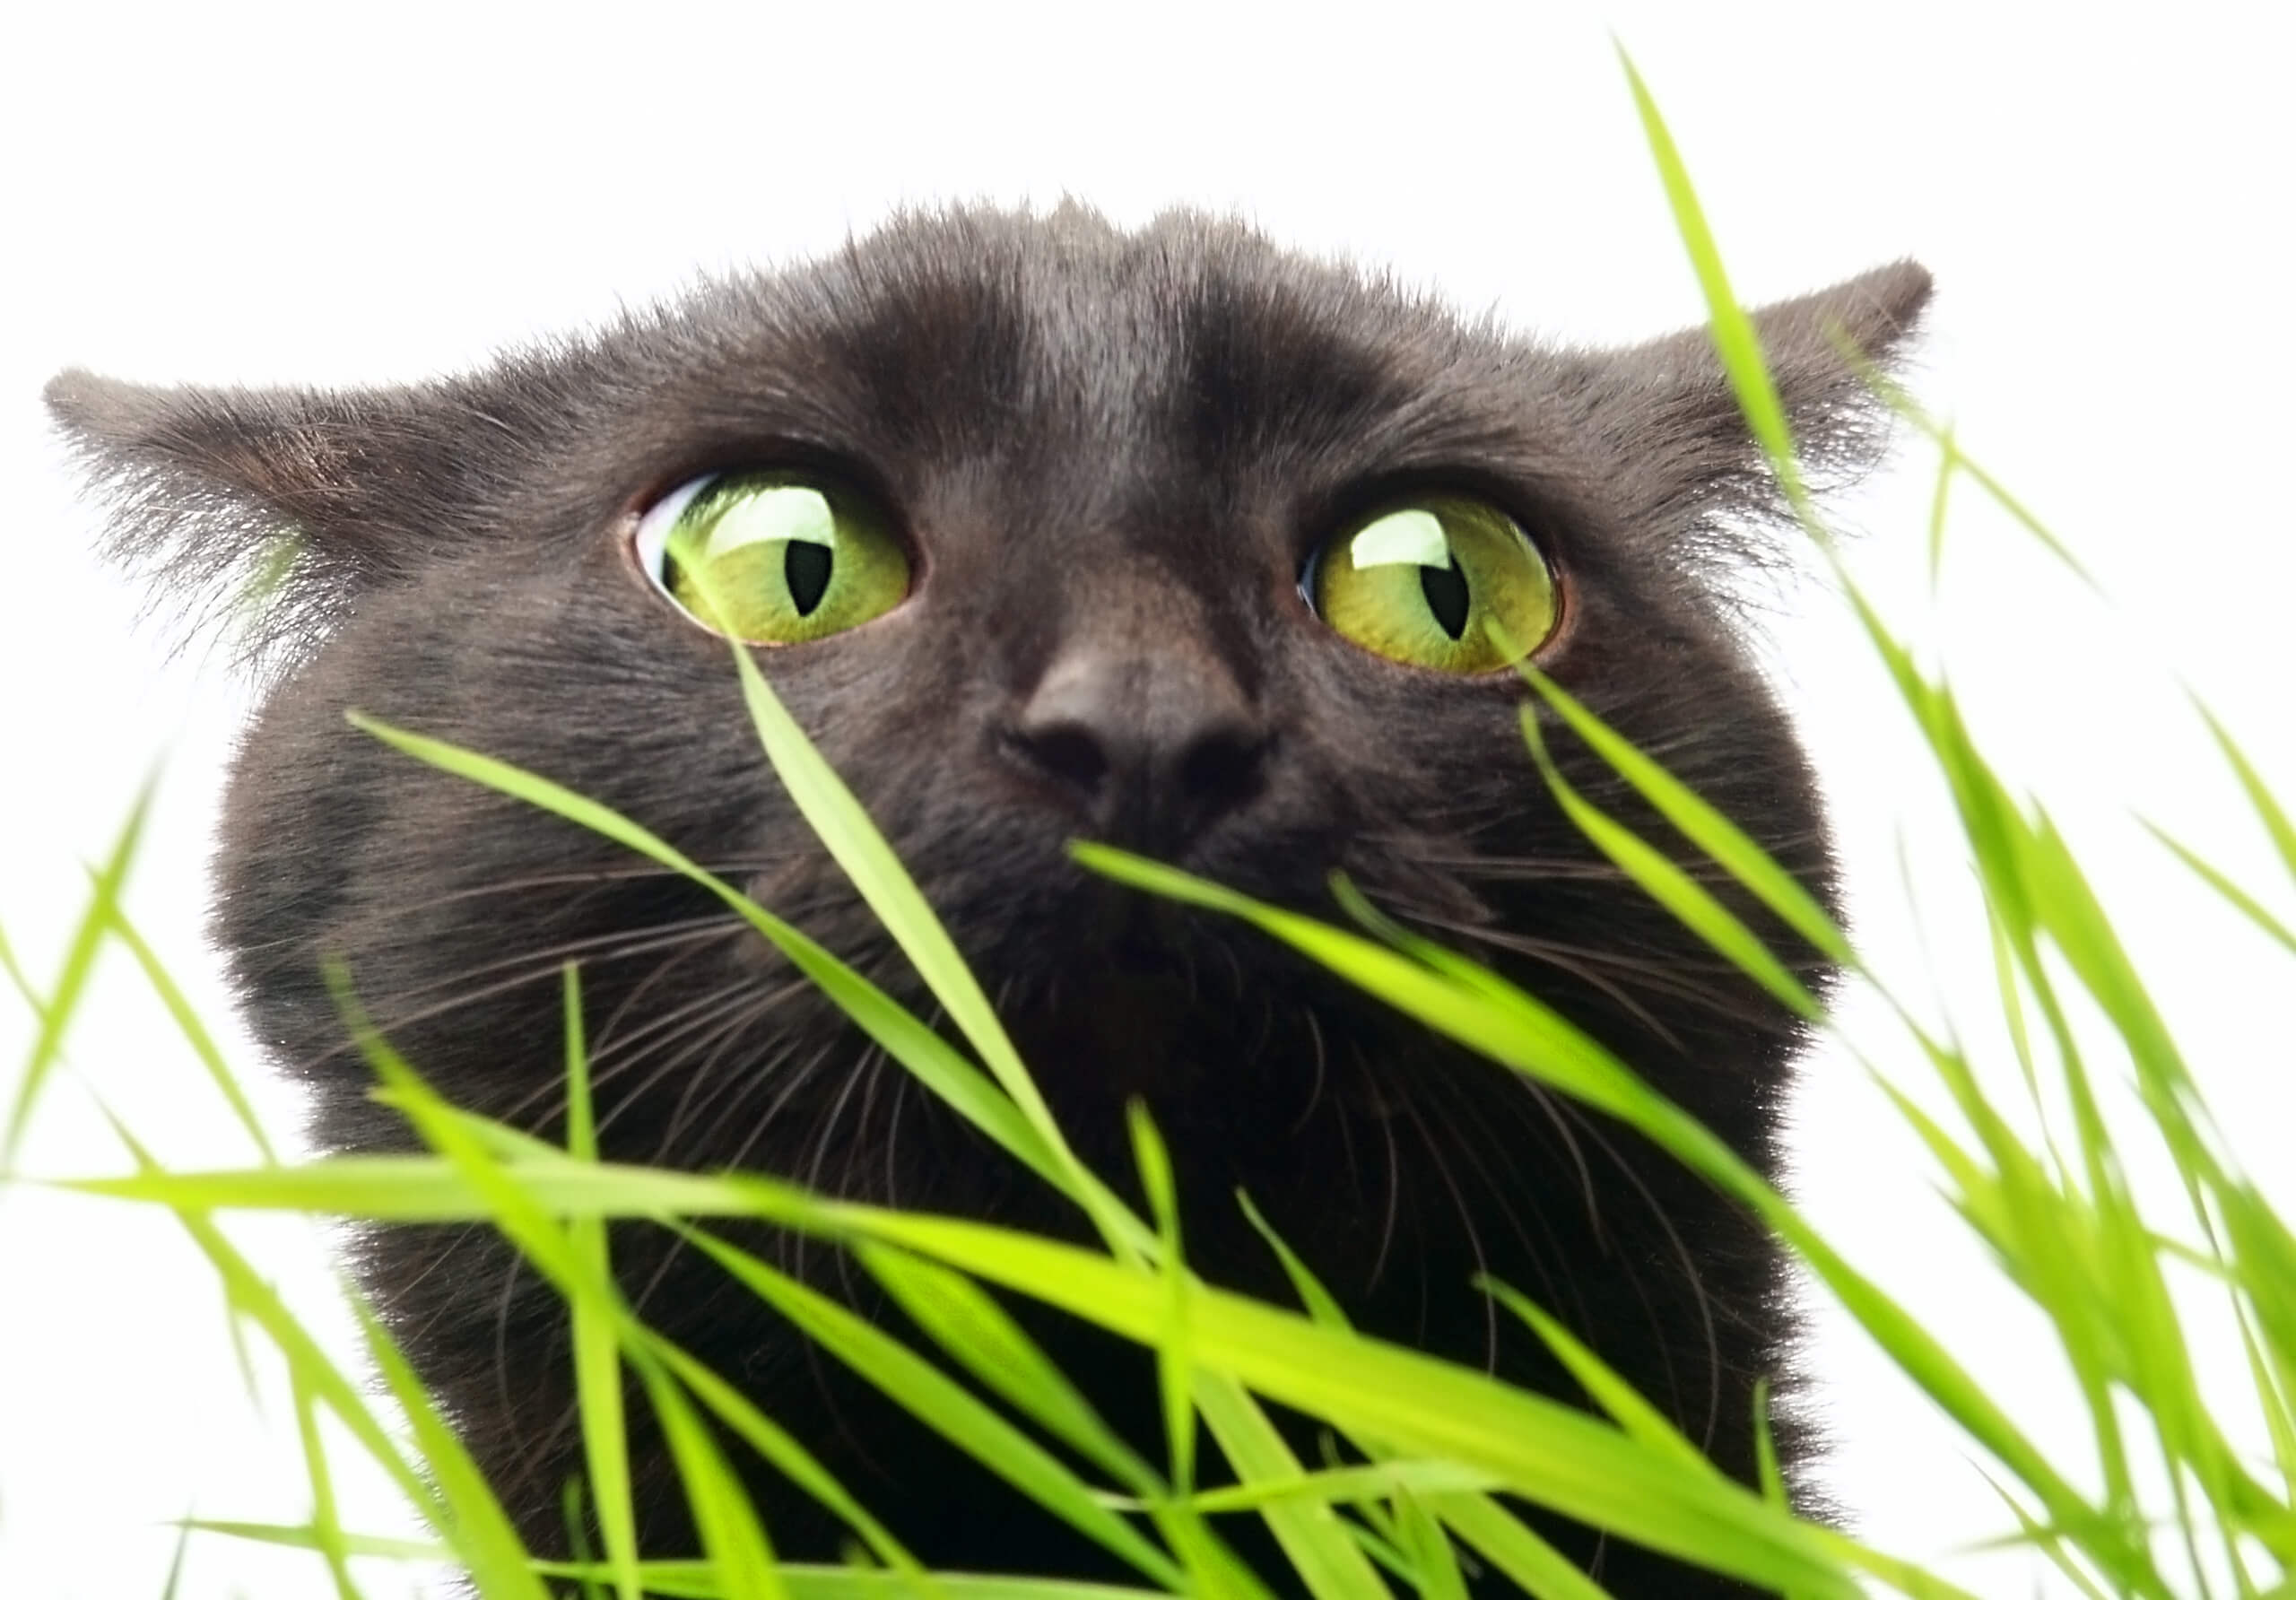 Применение Анотена при тревожности и стрессе у кошек: результаты слепого плацебоконтролируемого исследования